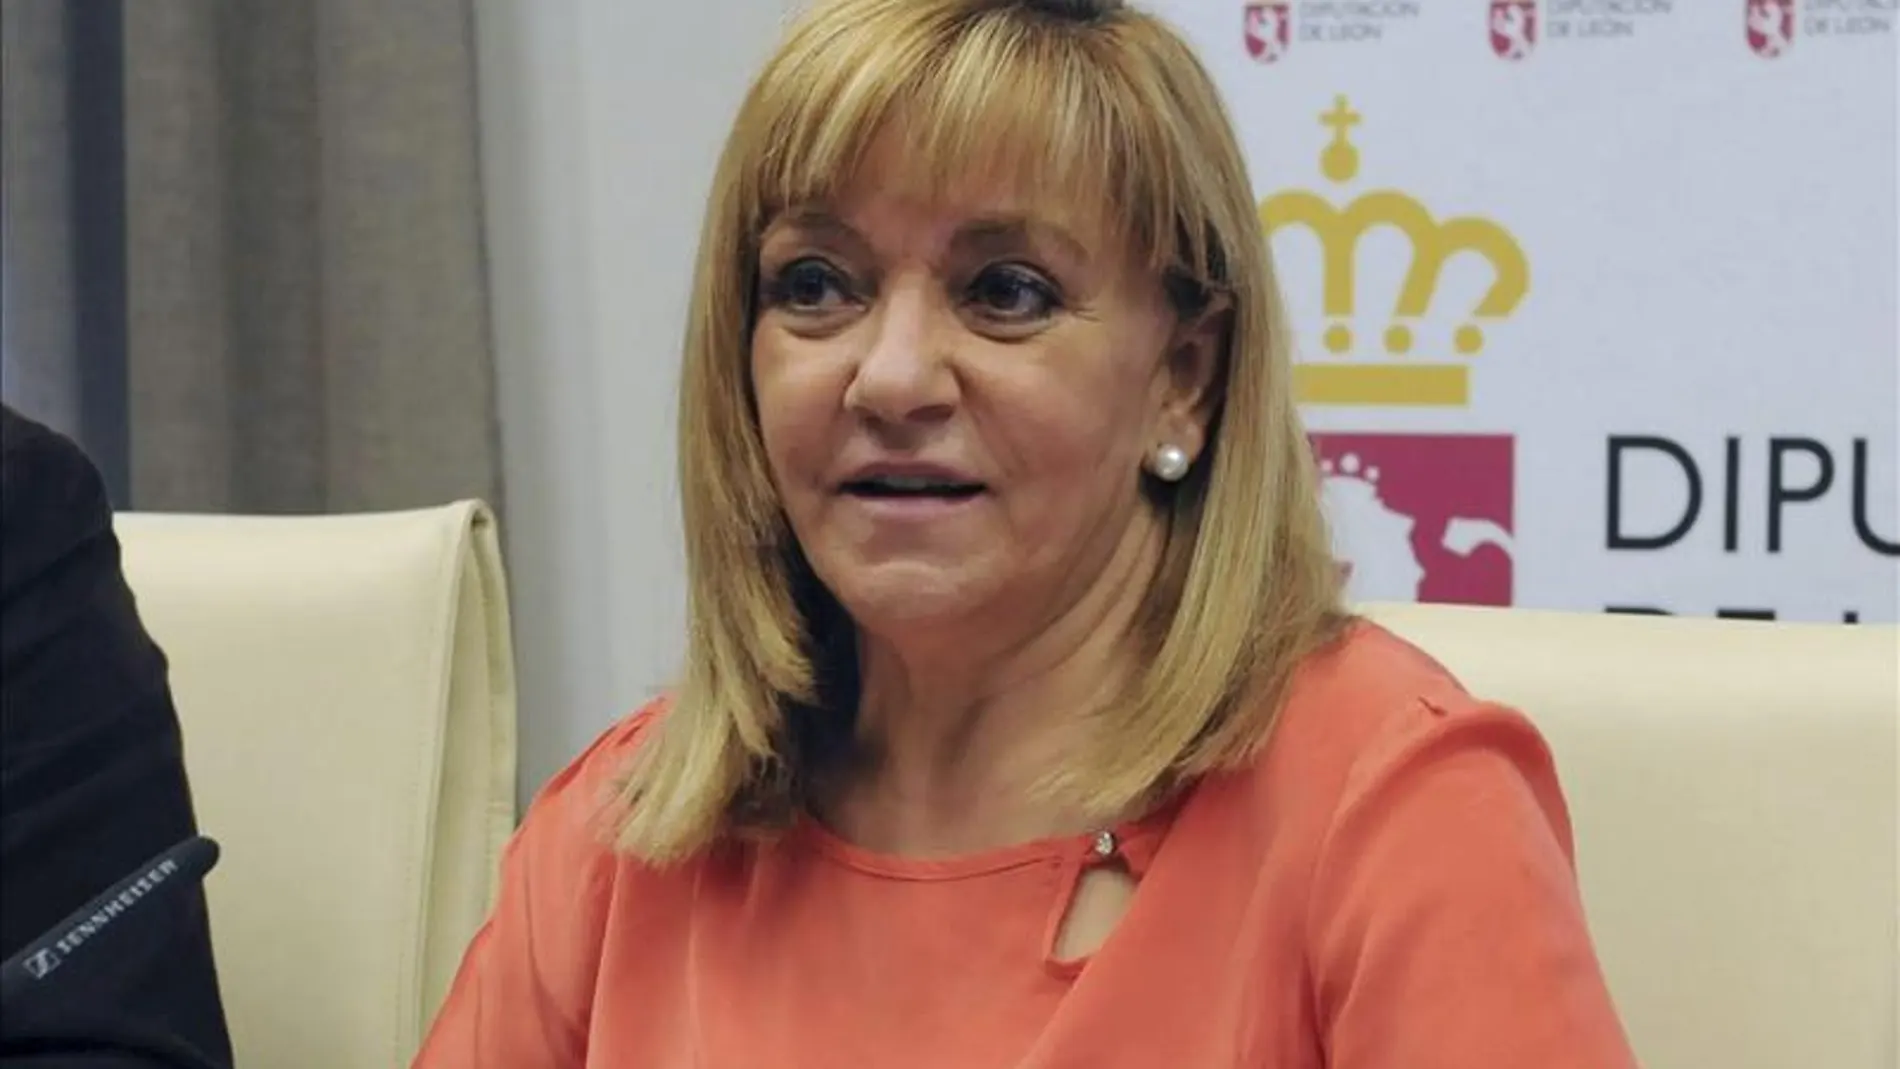 Asesinada la presidenta de la Diputación Provincial de León